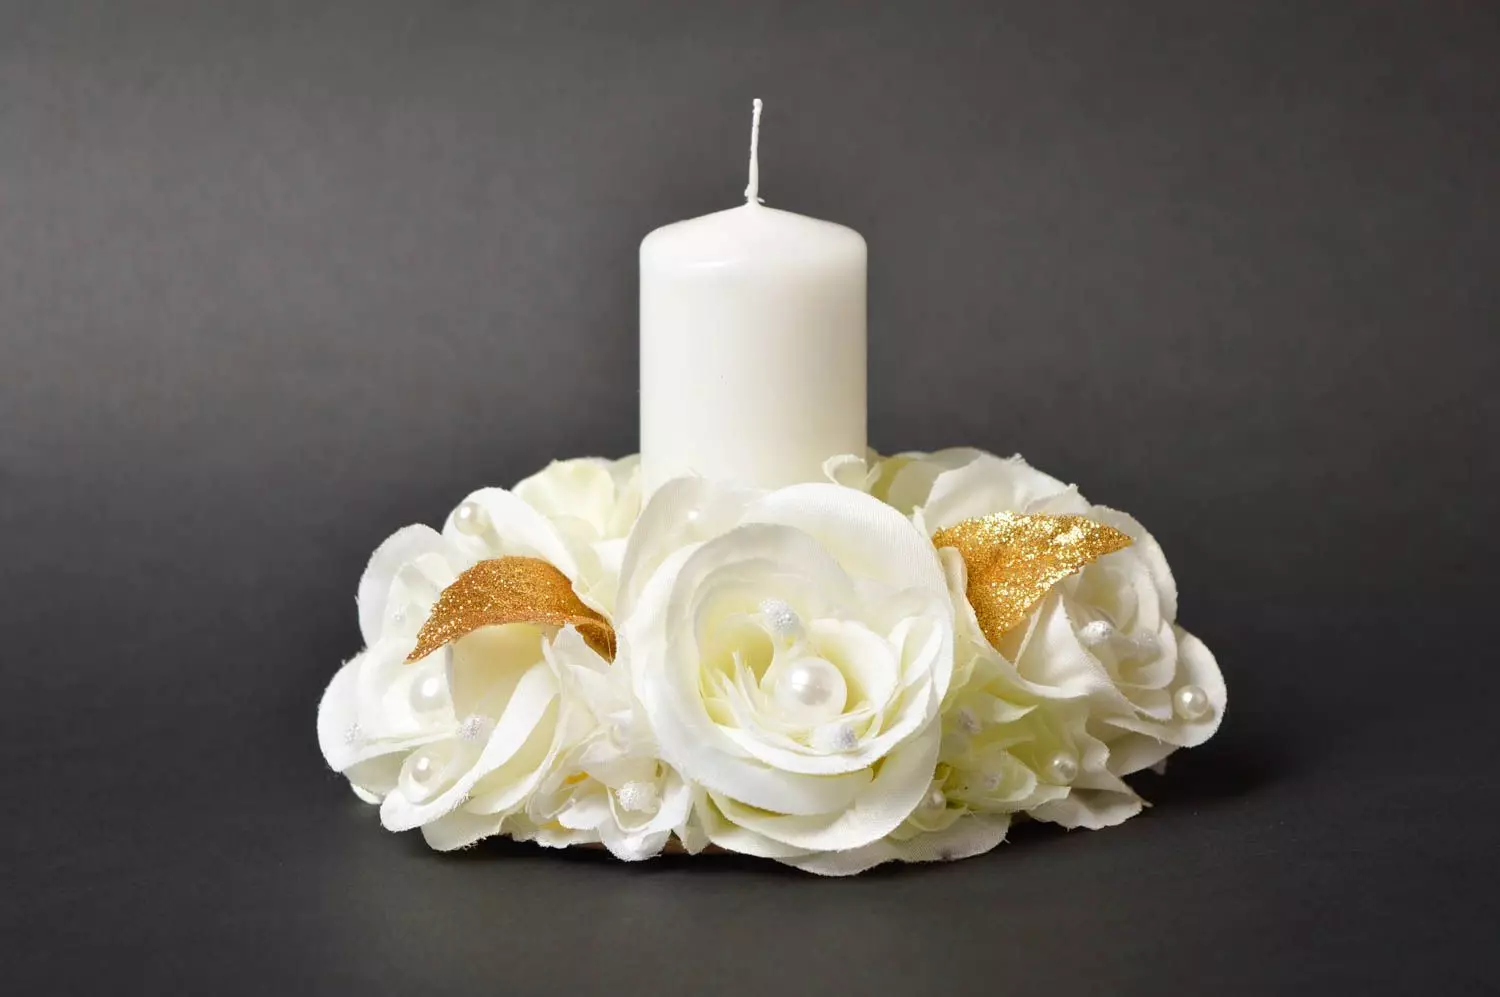 Kerzen Dekor: Dekoration von Kerzen mit den eigenen Händen mit getrockneten Sets, Dekoration von Hochzeitskerzen auf einer Meisterklasse, weiße Kerzen in einer Bank und anderen Ideen 20782_25